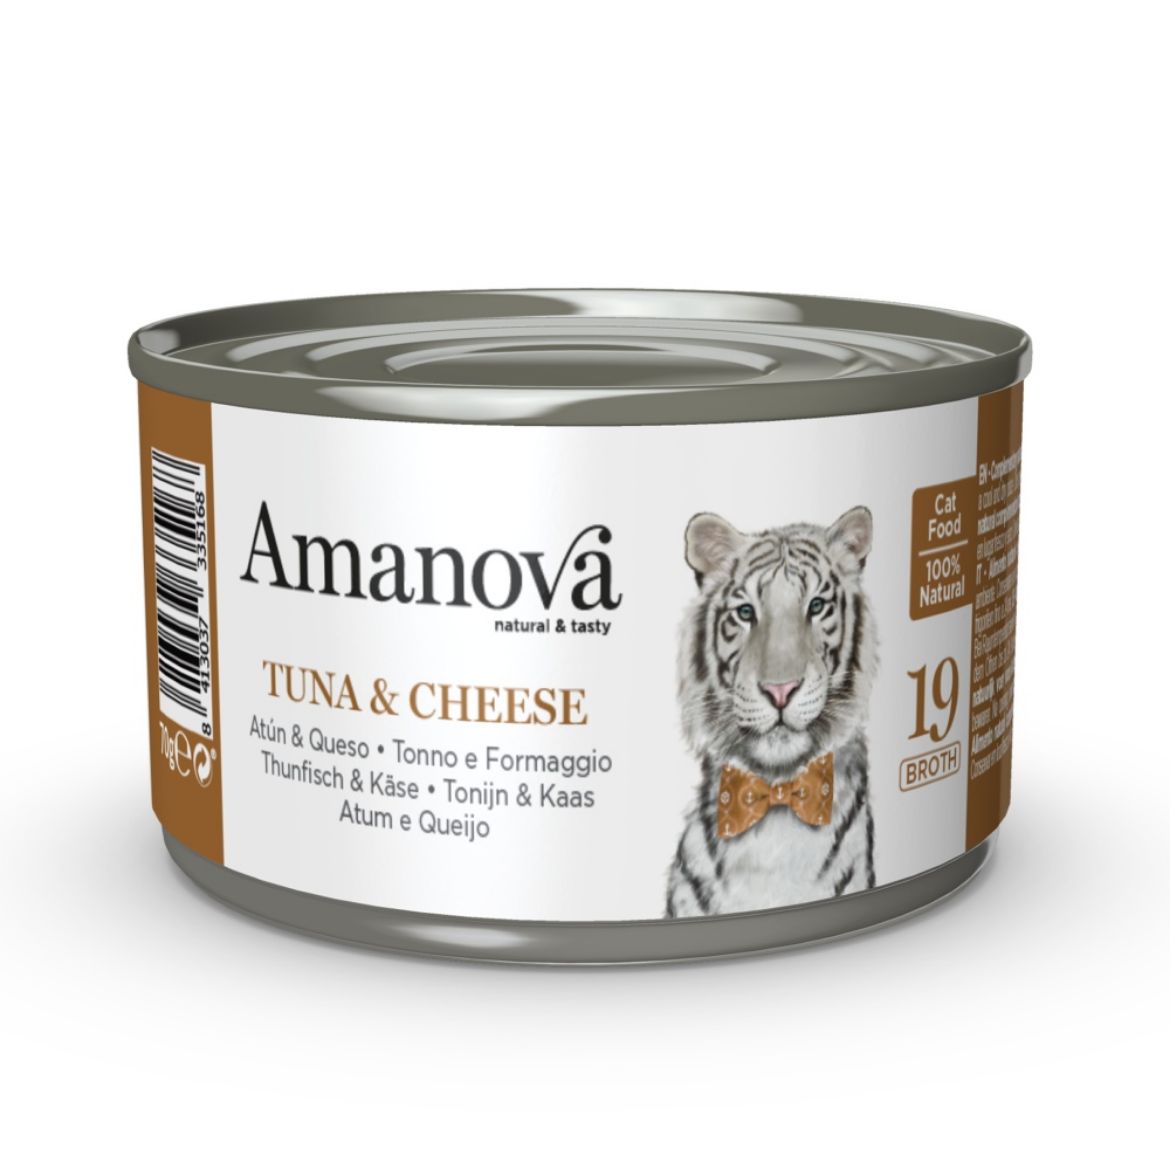 Obrázek z Amanova Cat Tuna & Cheese ve vývaru (19), konzerva 70 g 